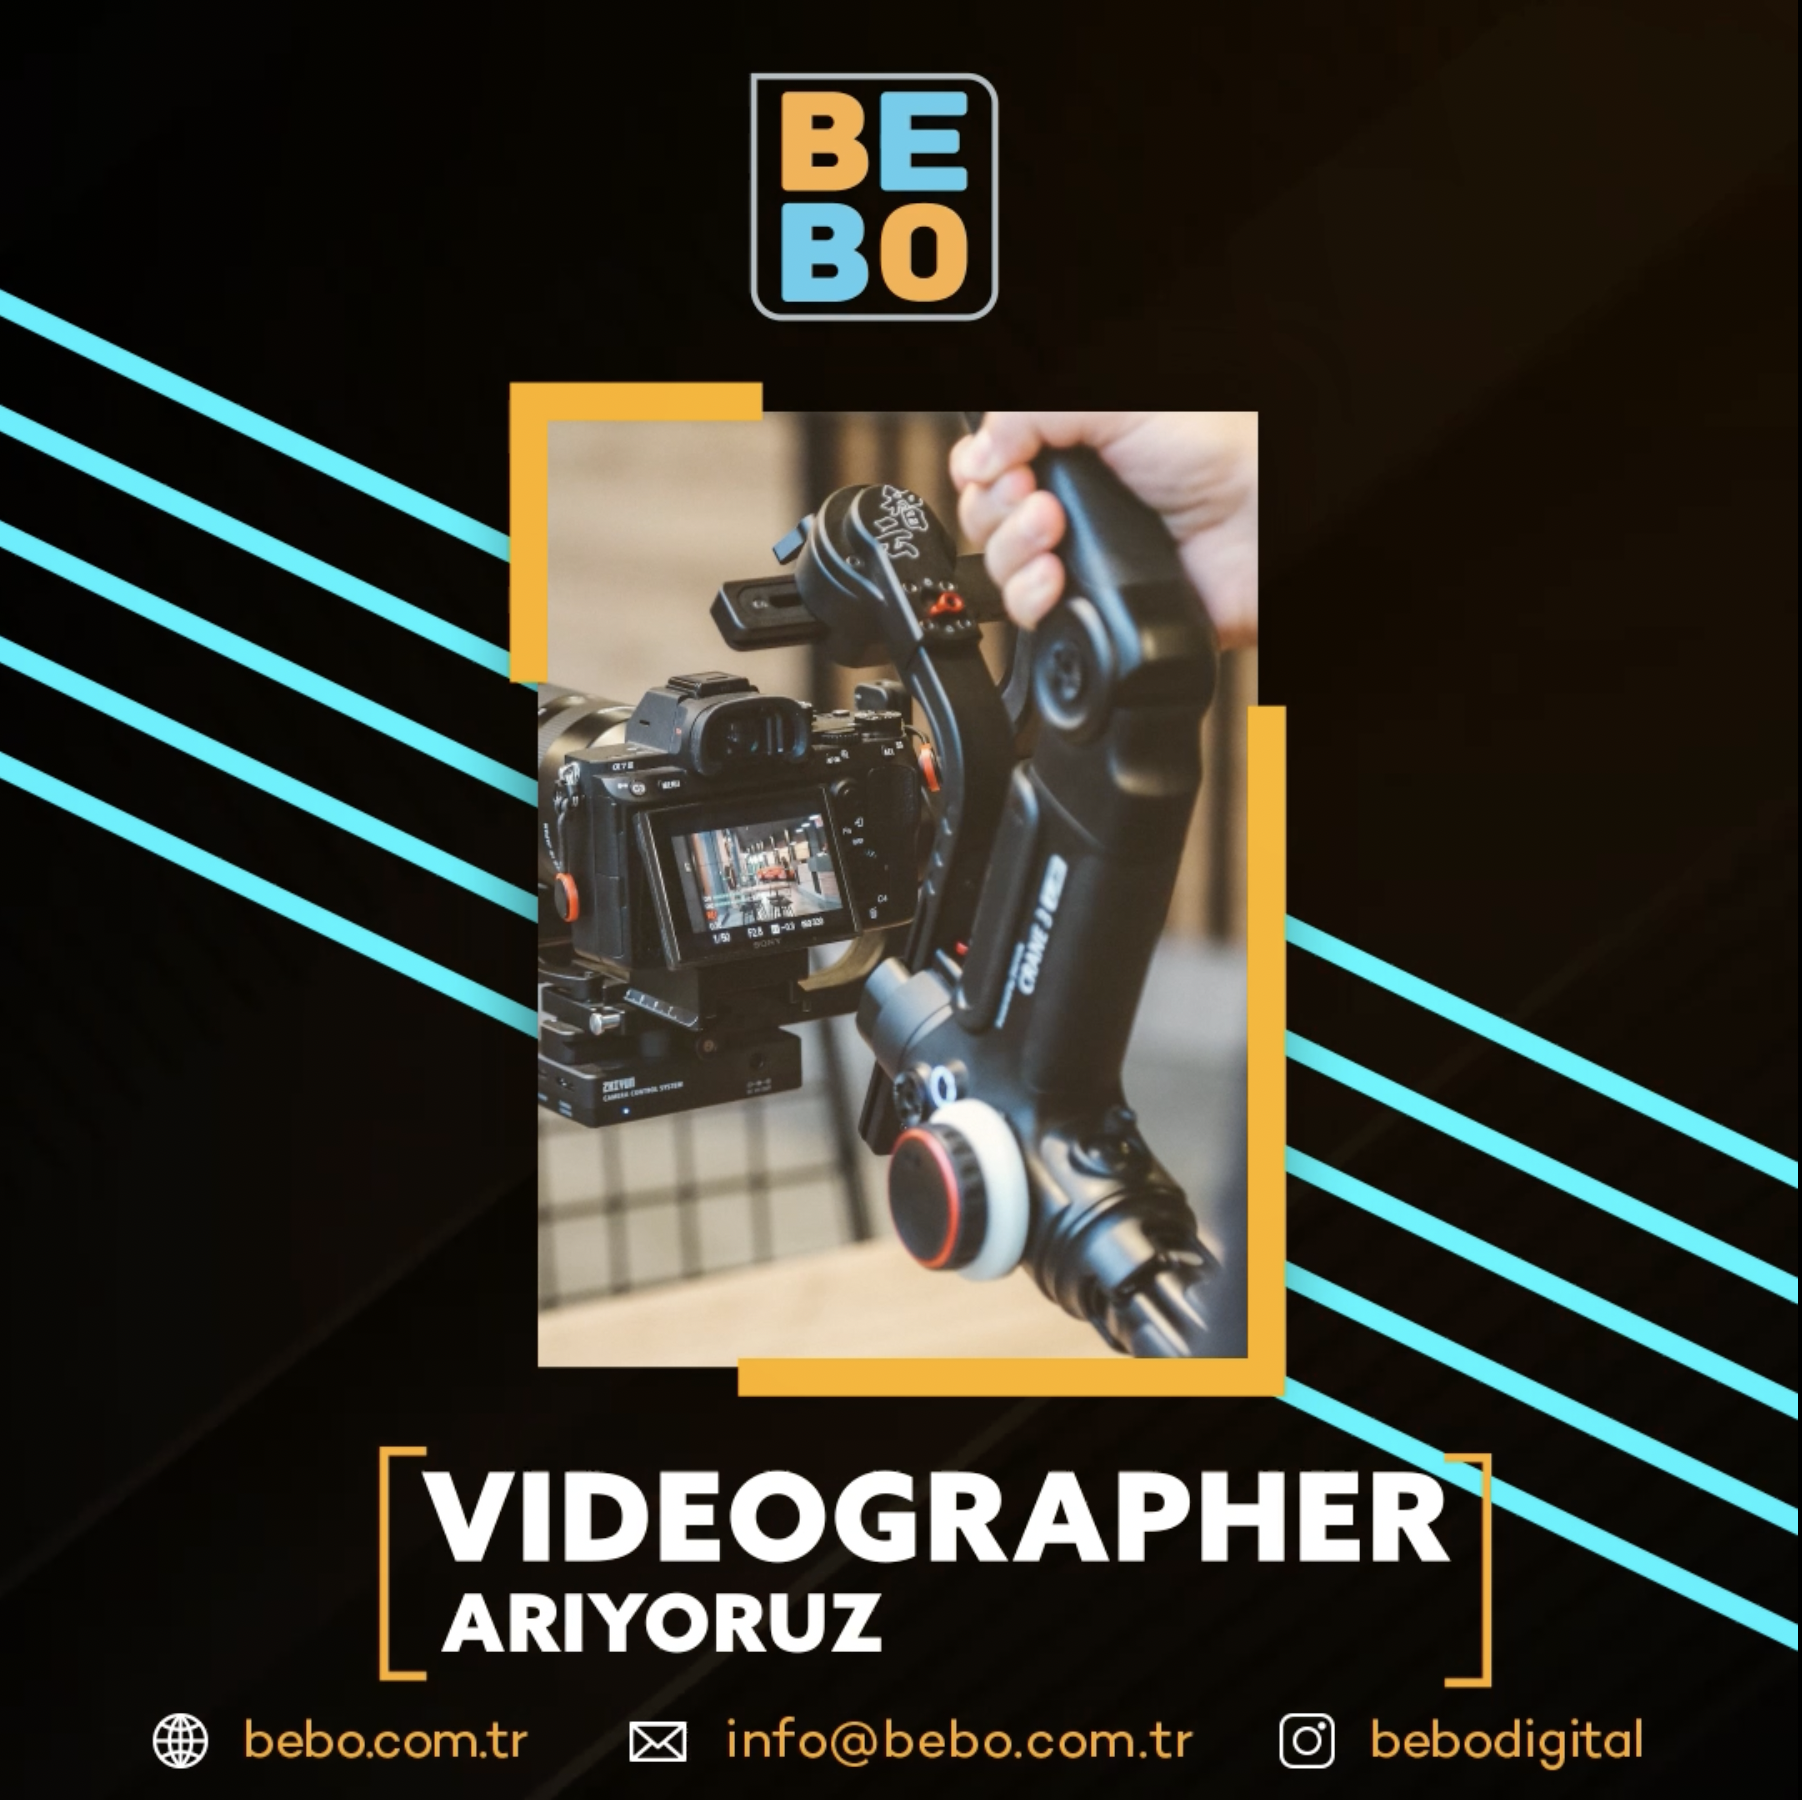 BeBo Videographer arıyor!